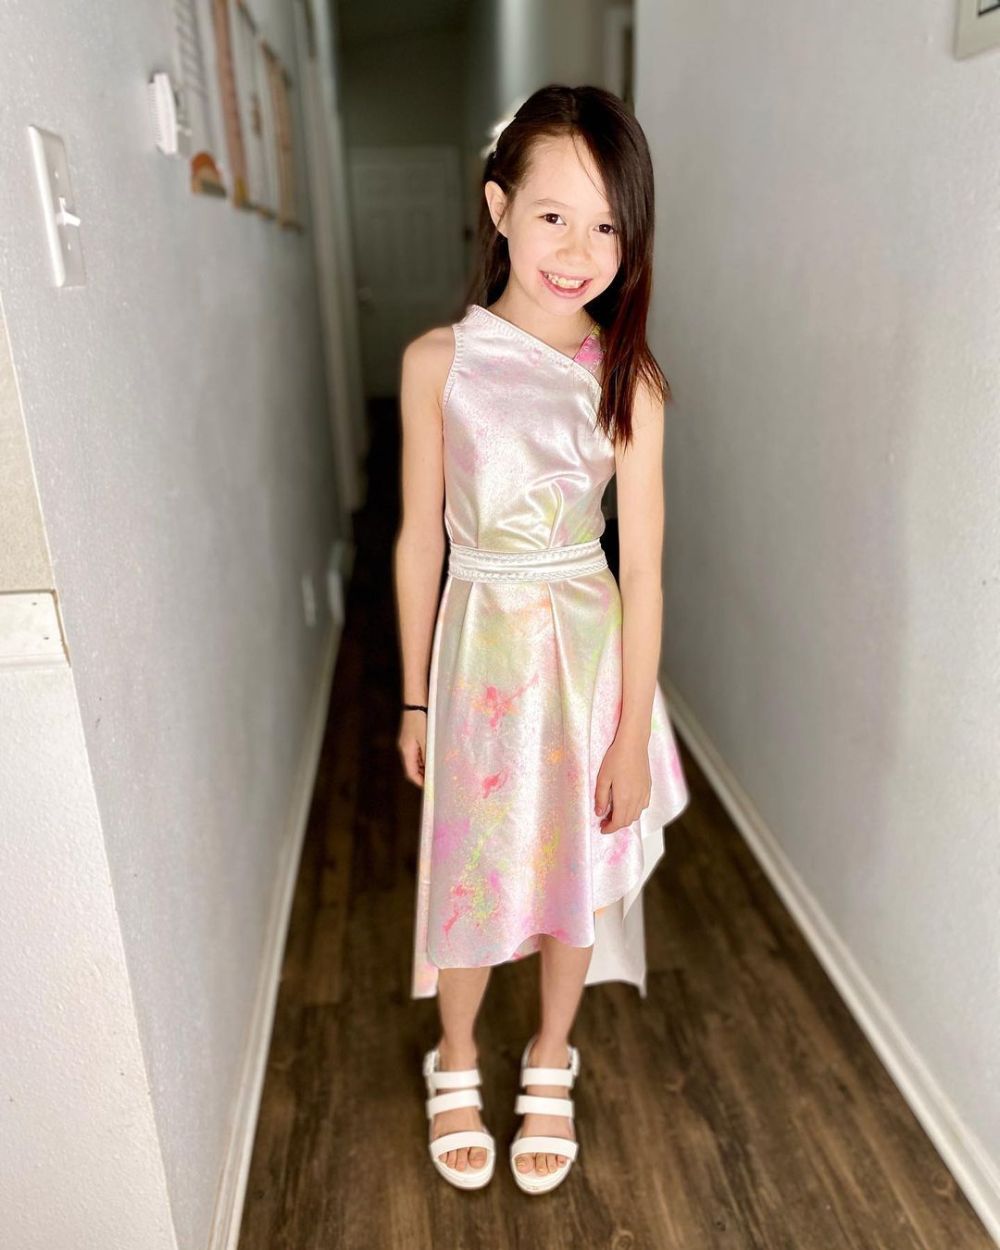 Menina de 9 anos que costura suas próprias roupas fica famosa no mundo da  moda - Revista Crescer, Educação